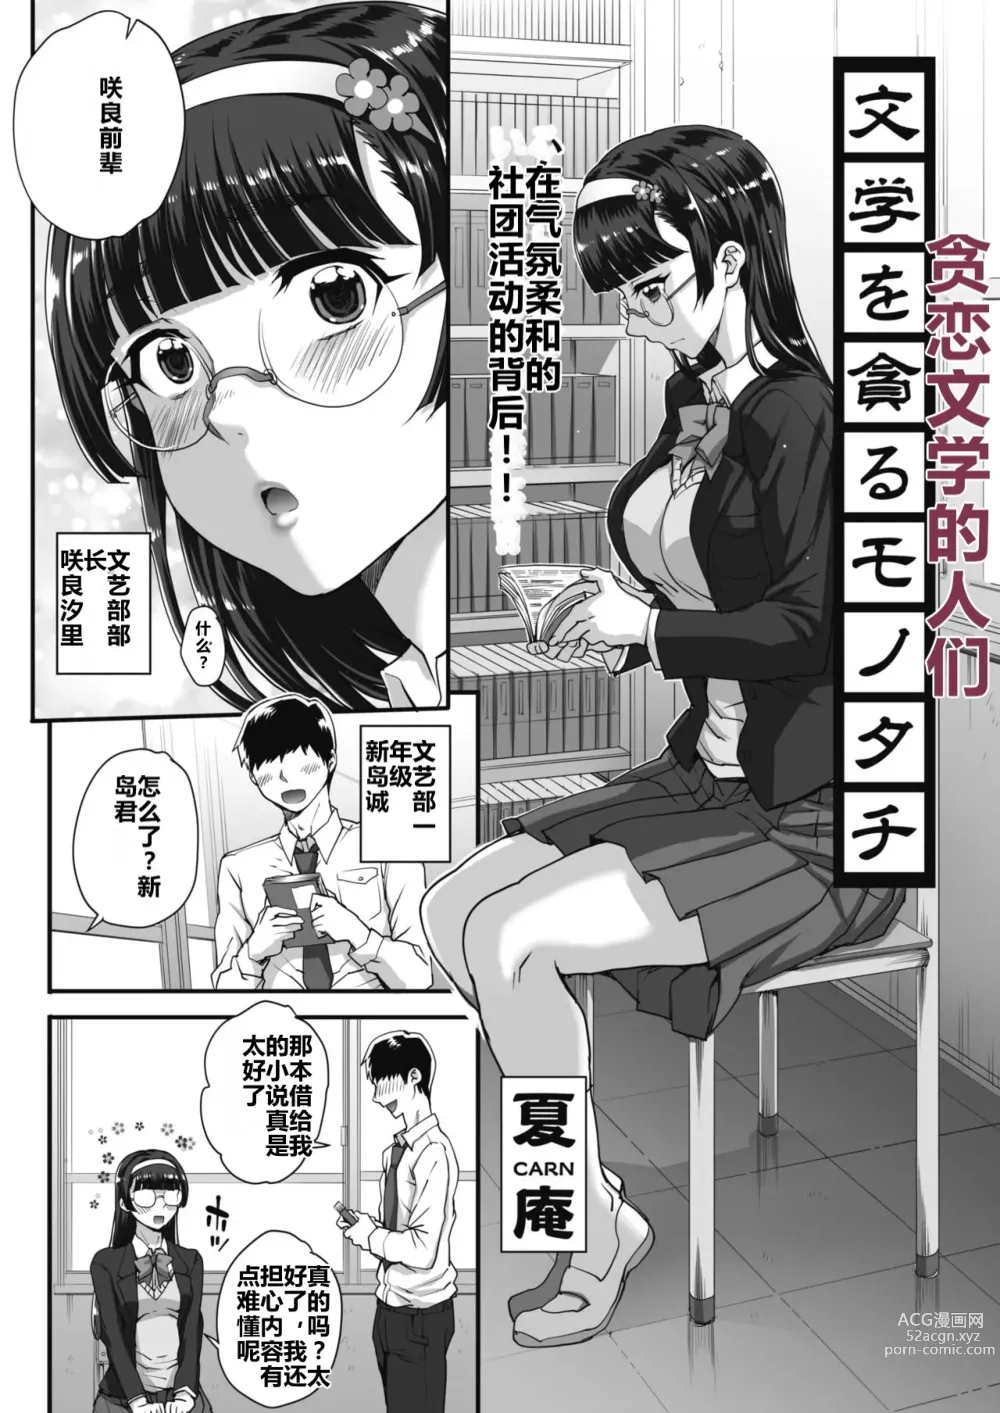 Page 1 of manga 贪恋文学的人们